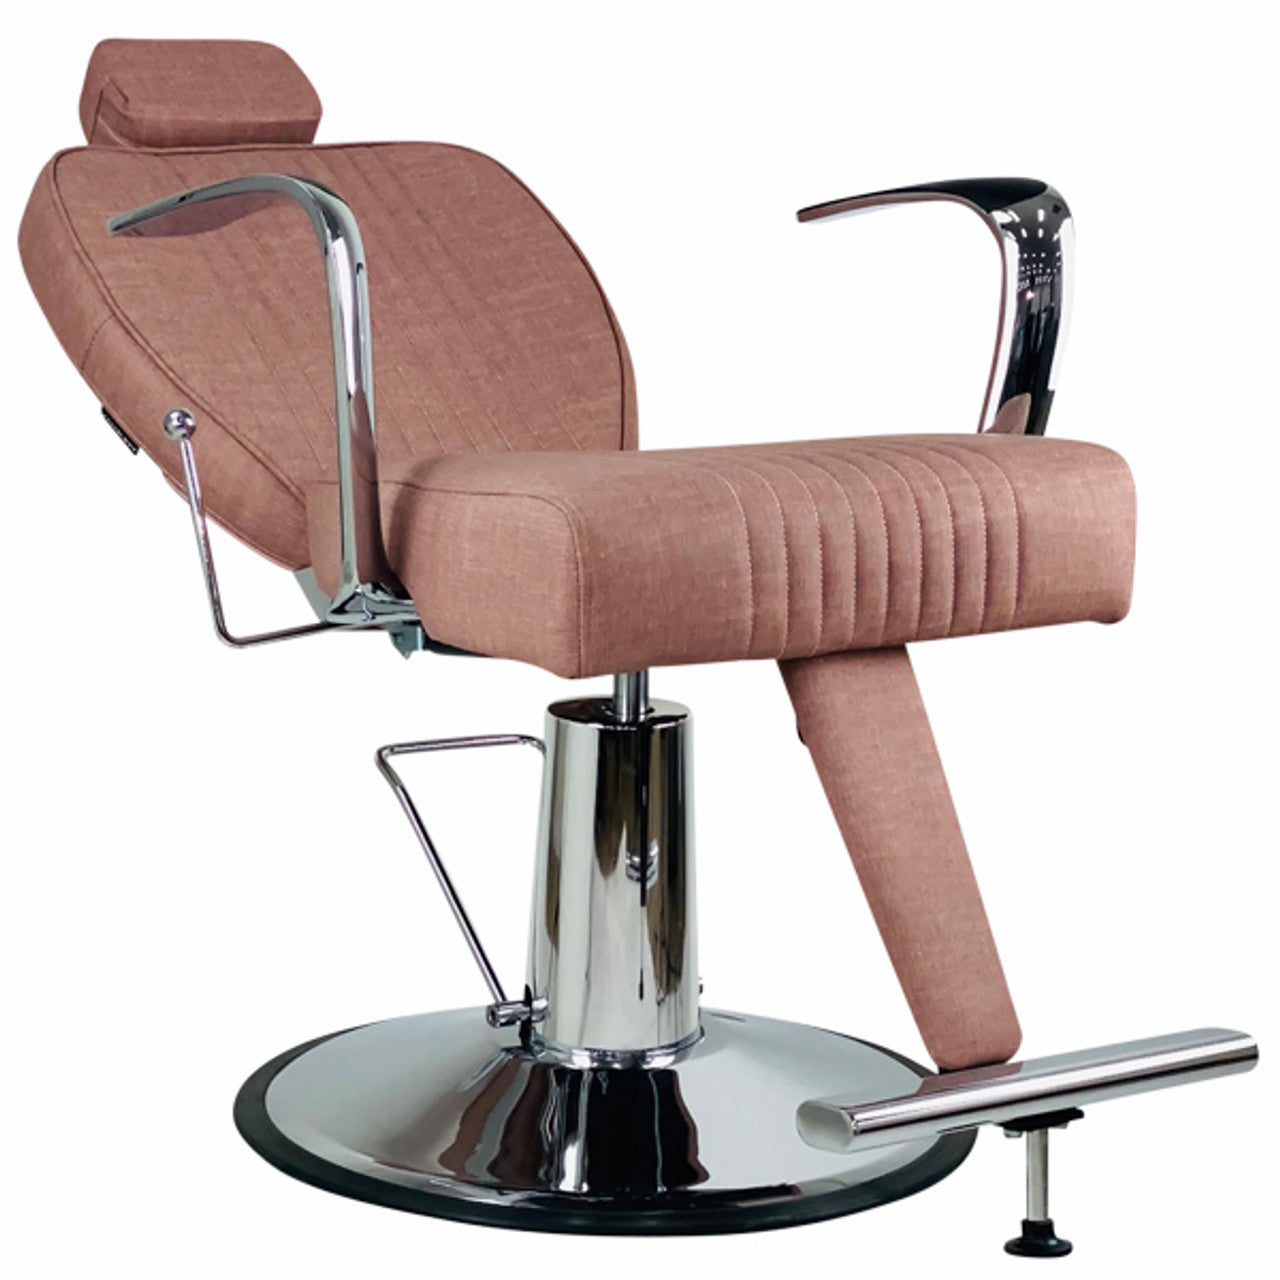 Joiken Titan Recliner Chair - Dusty Pink